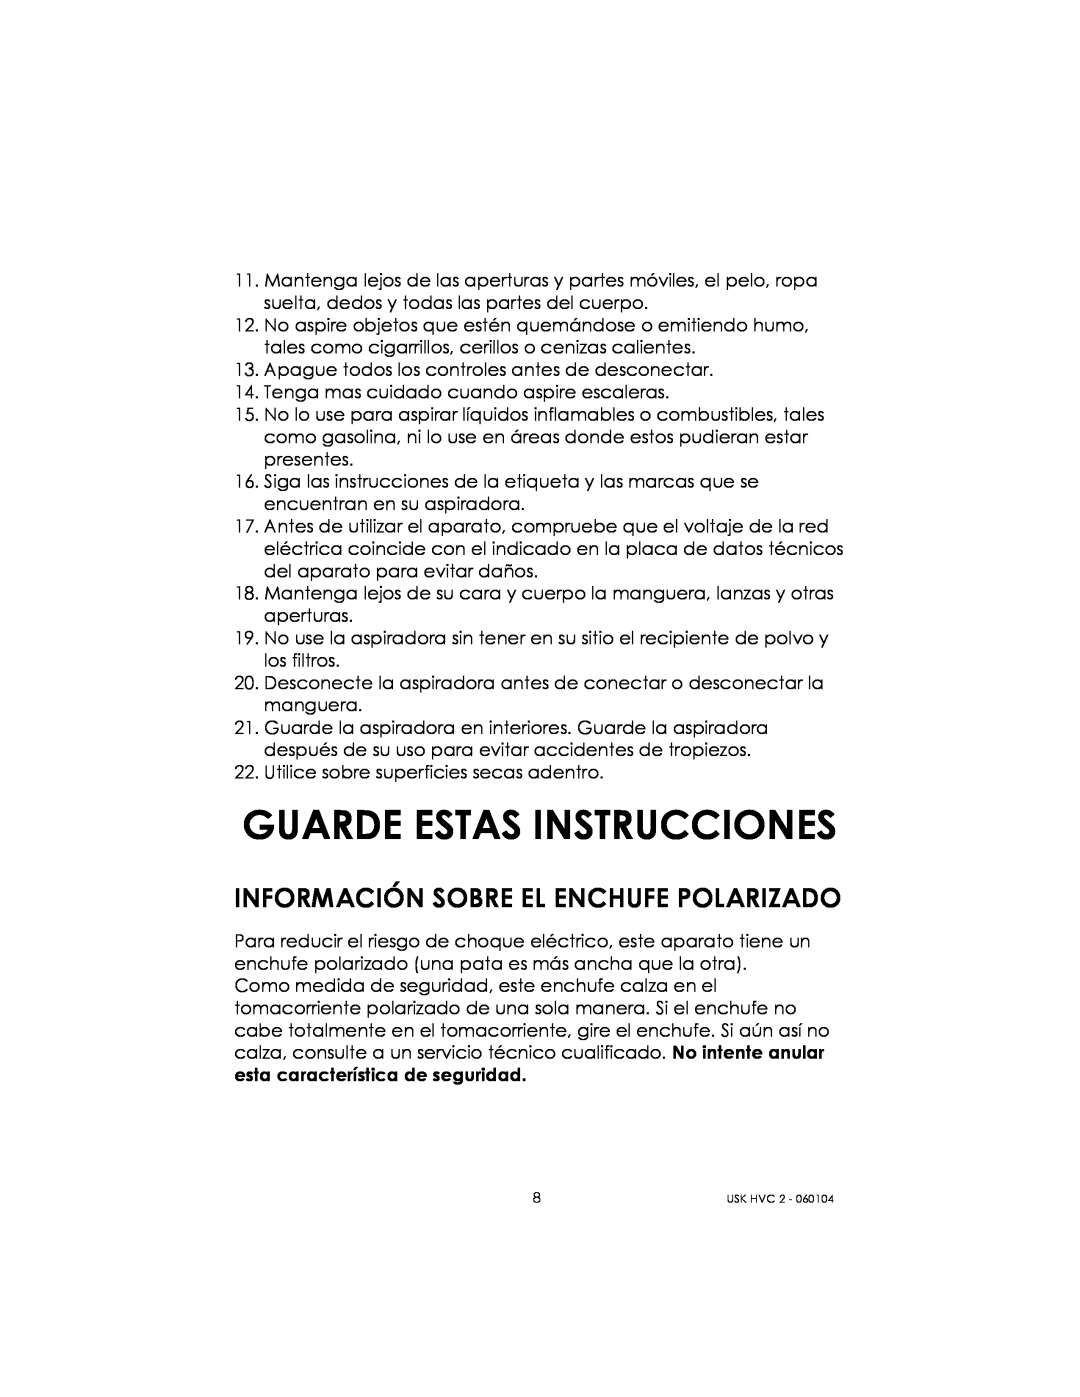 Kalorik USK HVC 2 manual Guarde Estas Instrucciones, Información Sobre El Enchufe Polarizado 